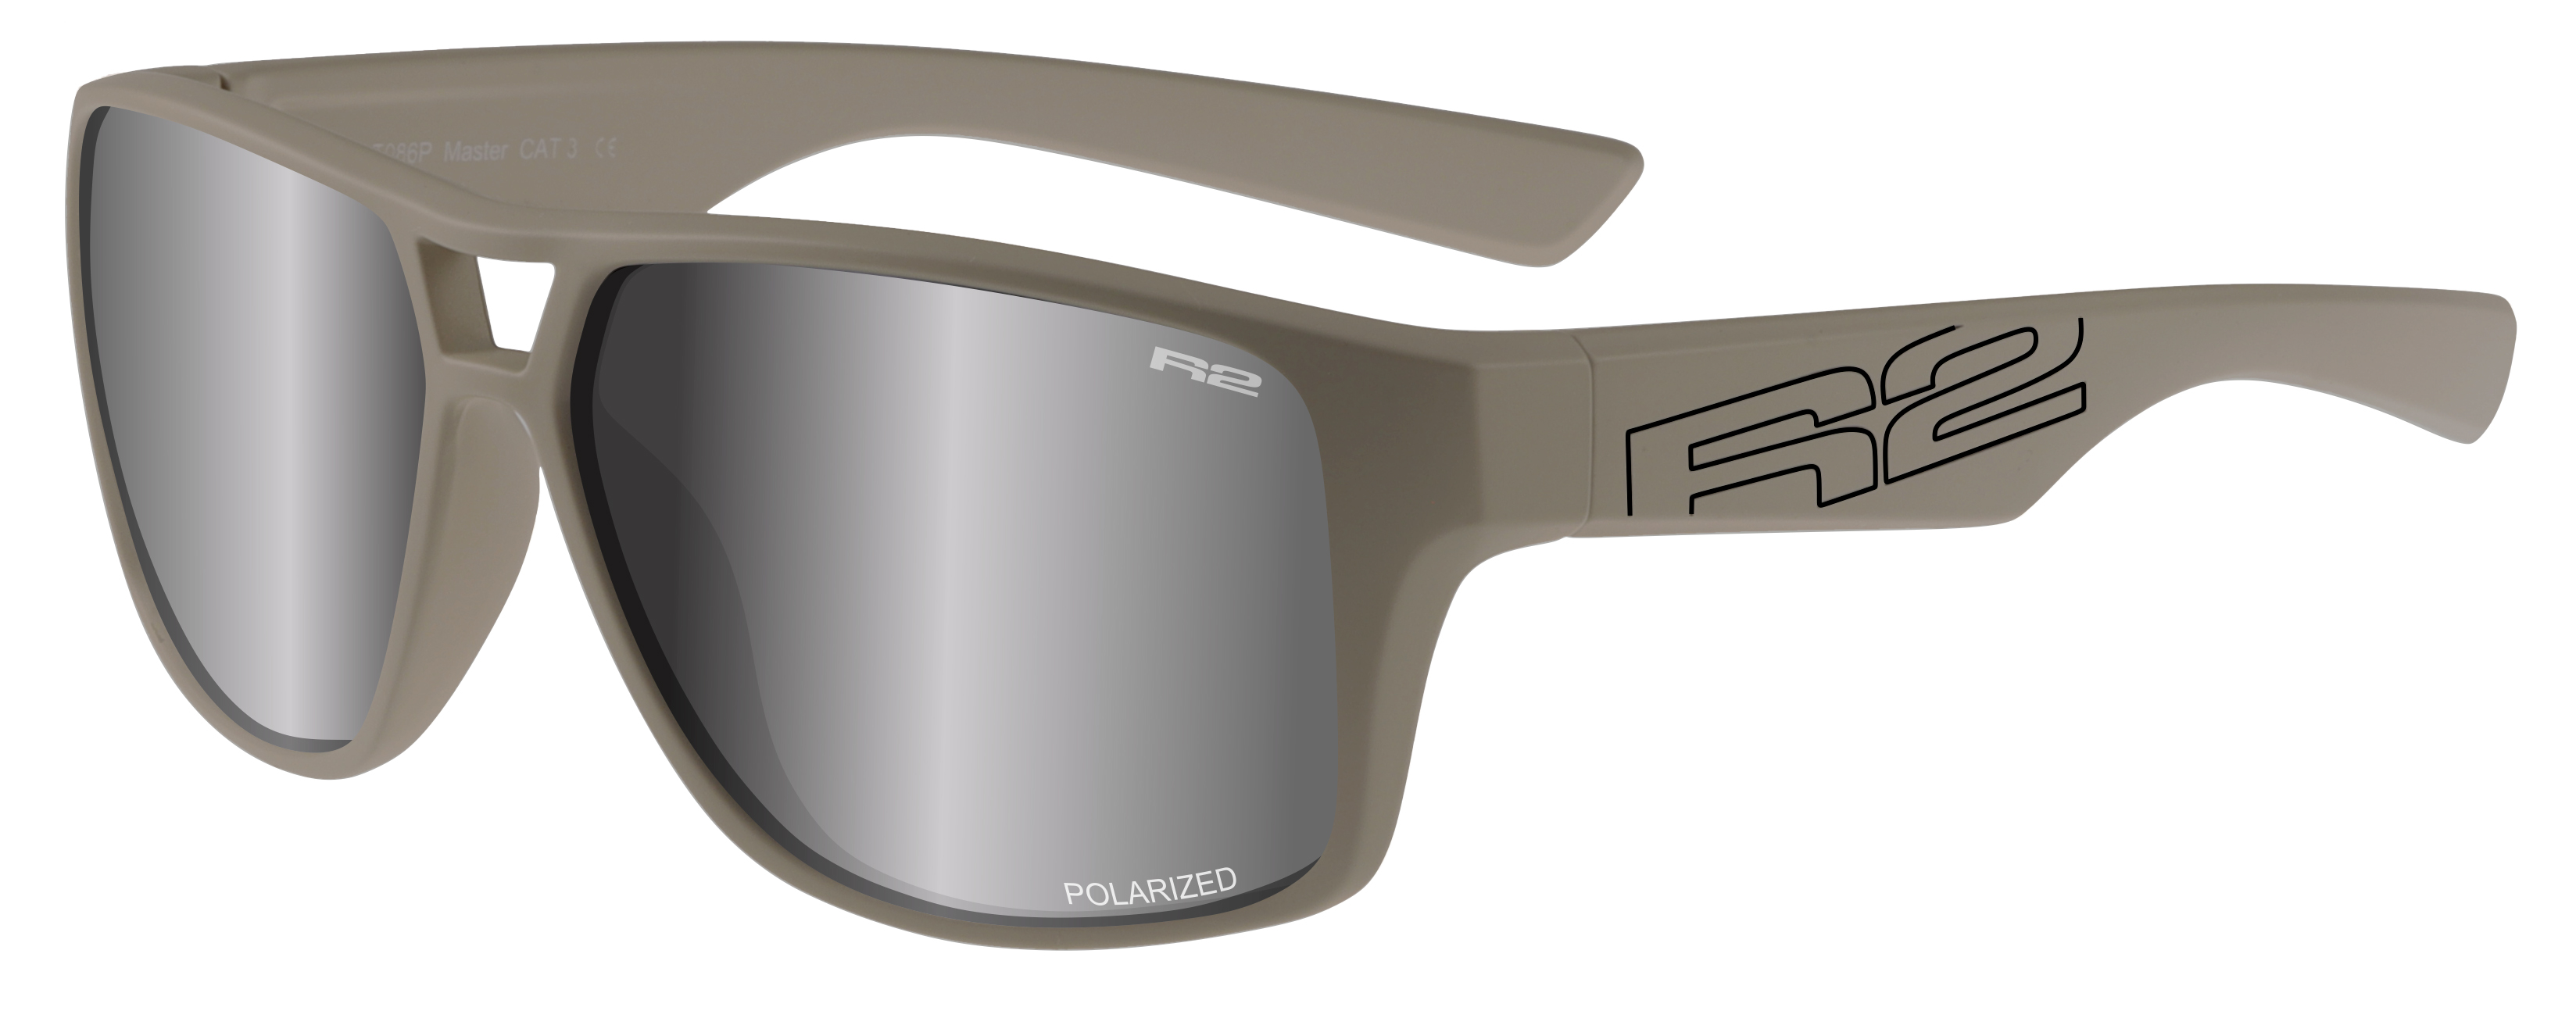 Sportovní sluneční brýle R2 MASTER AT086S - standard